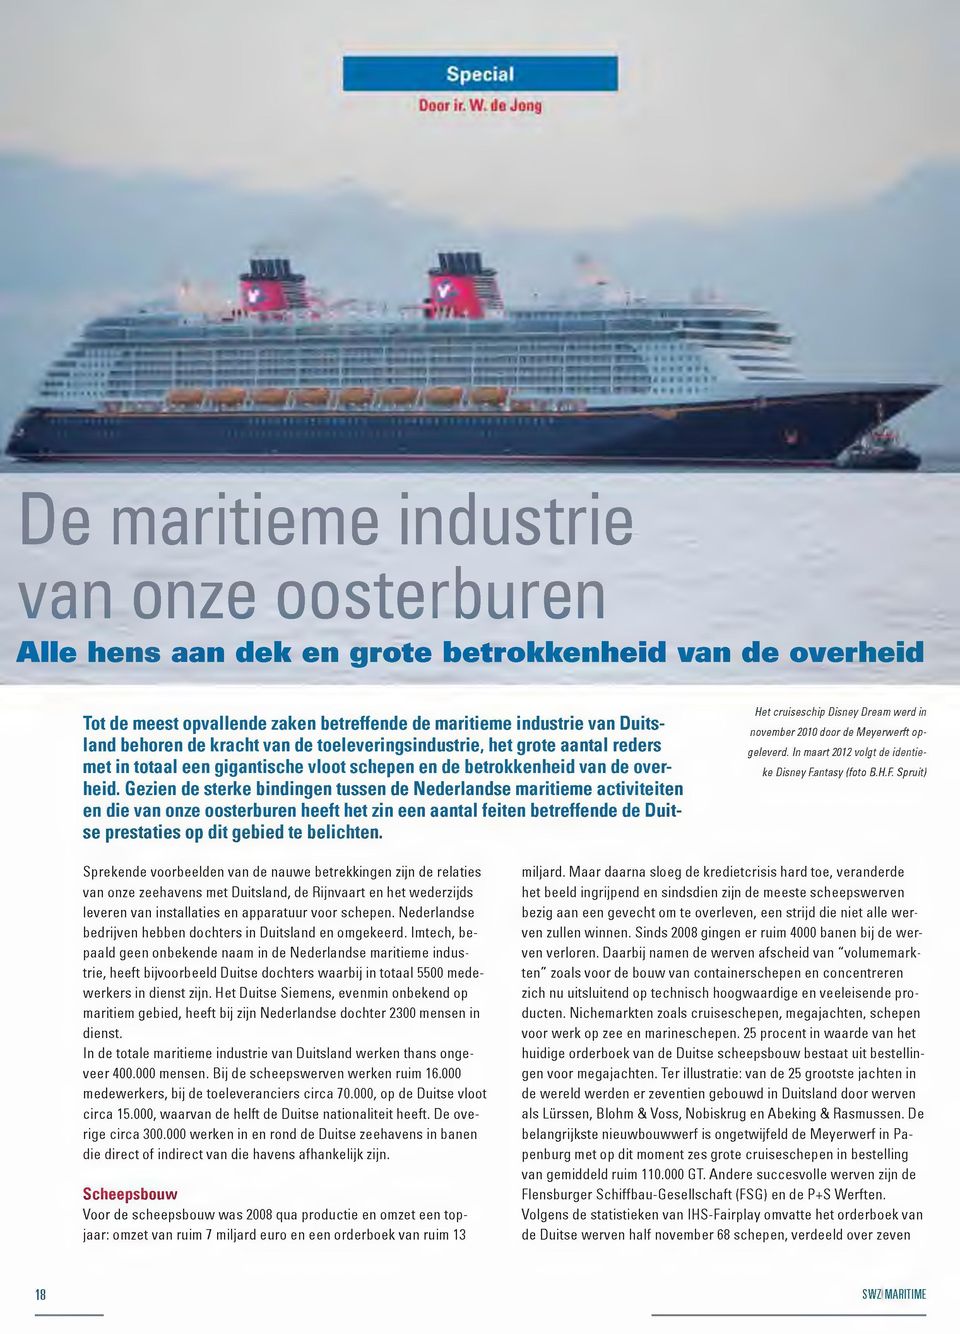 Gezien de sterke bindingen tussen de Nederlandse maritieme activiteiten en die van onze oosterburen heeft het zin een aantal feiten betreffende de Duitse prestaties op dit gebied te belichten.